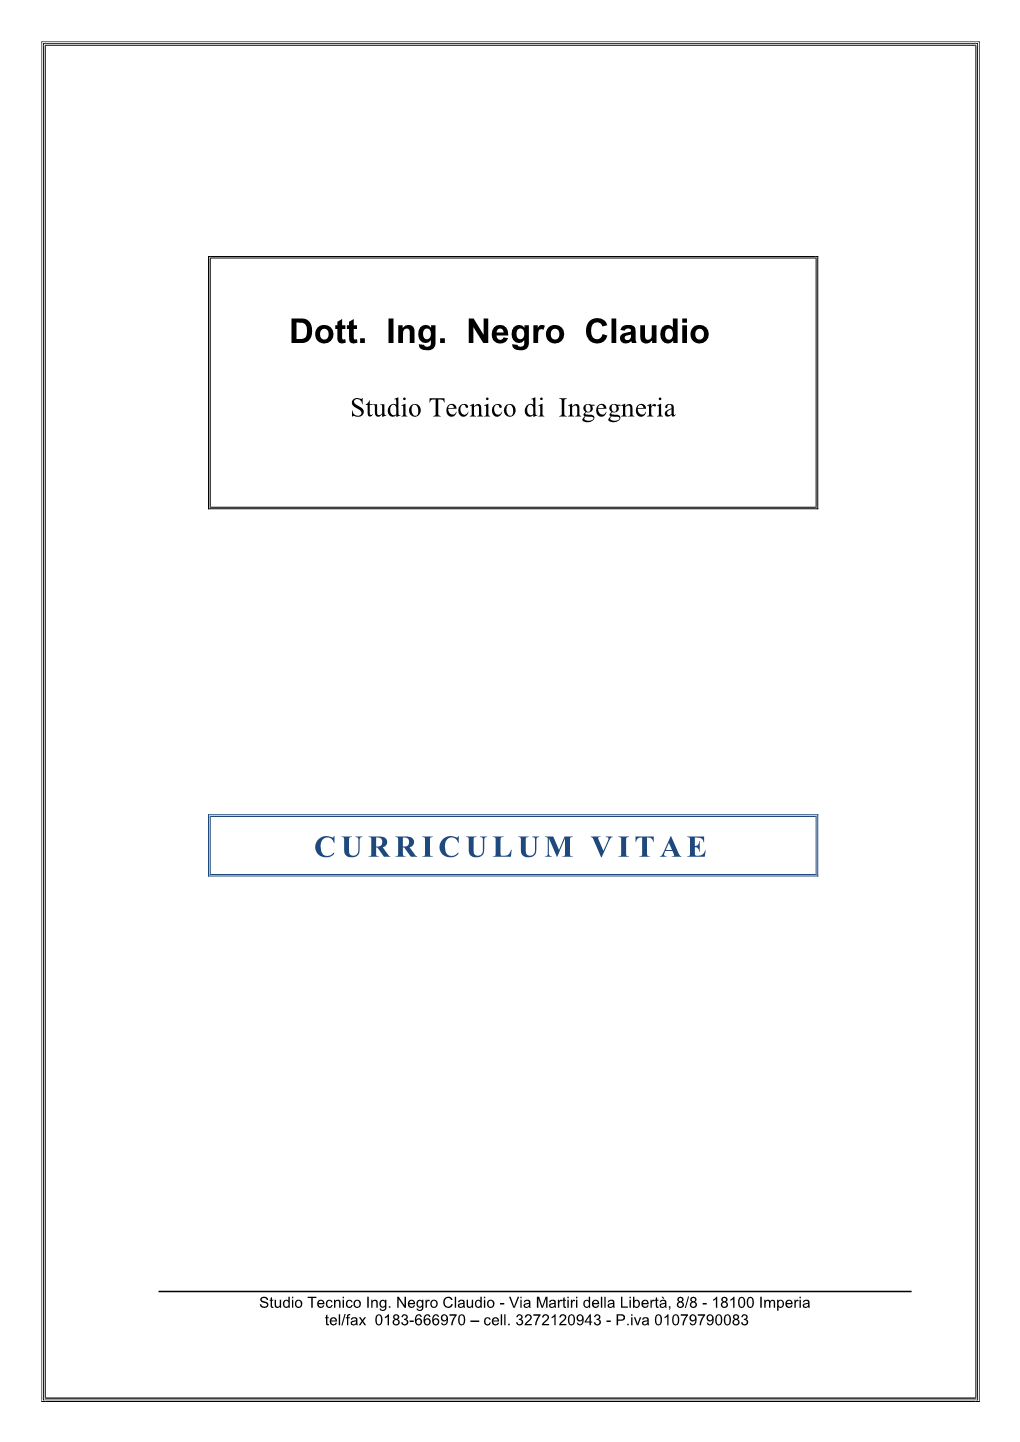 Dott. Ing. Negro Claudio